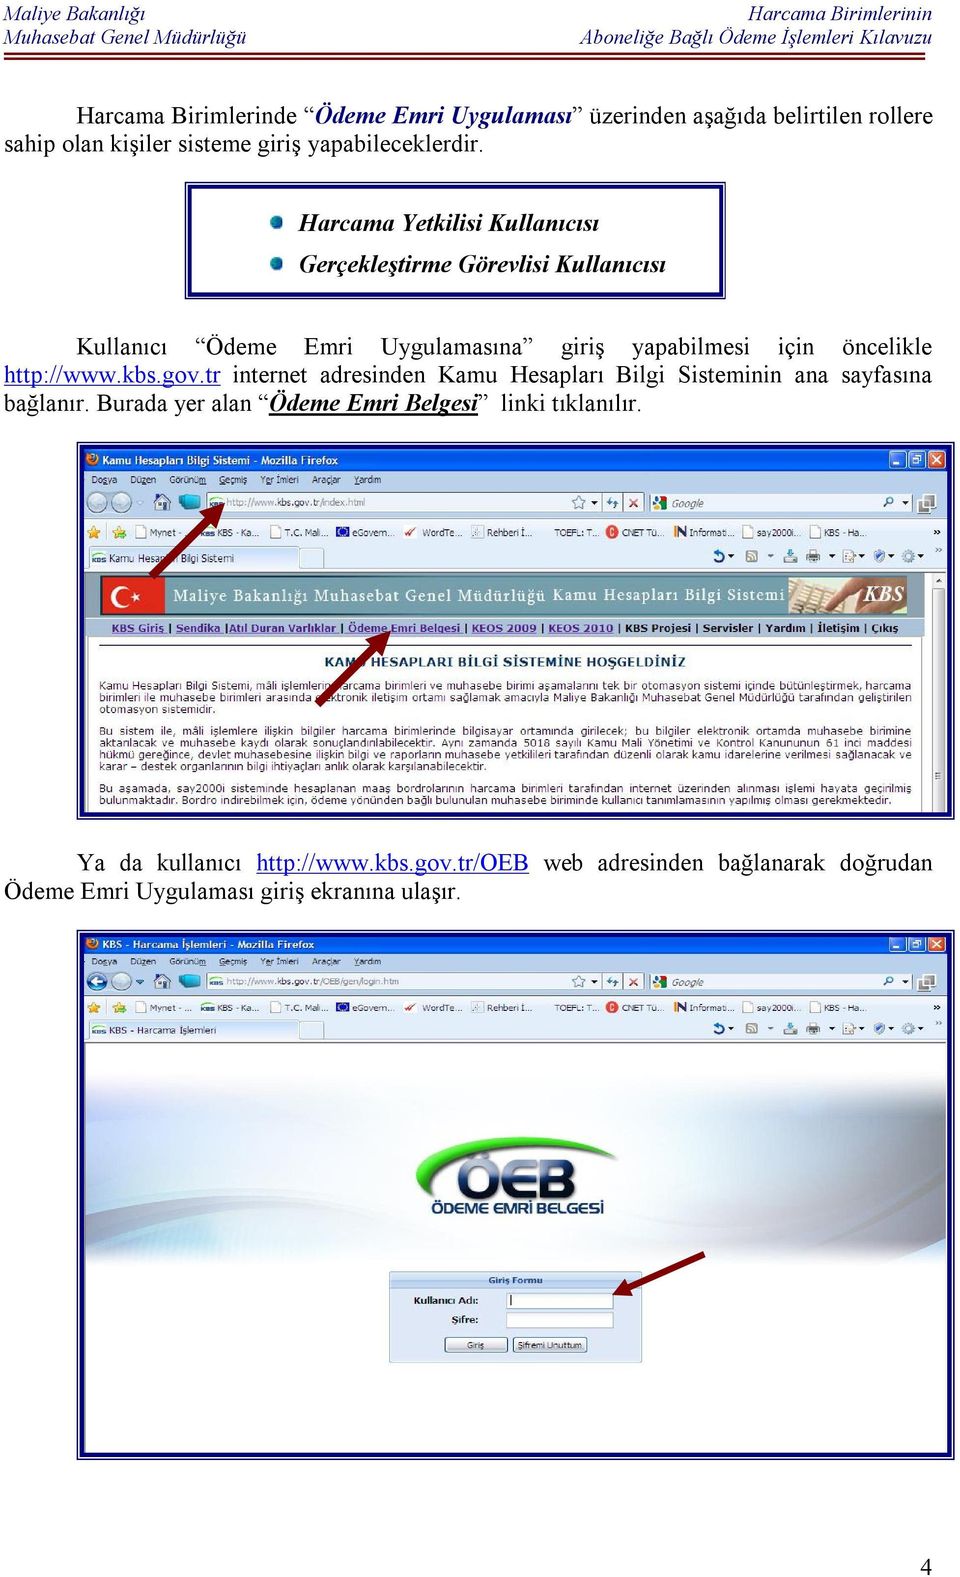 http://www.kbs.gov.tr internet adresinden Kamu Hesapları Bilgi Sisteminin ana sayfasına bağlanır.